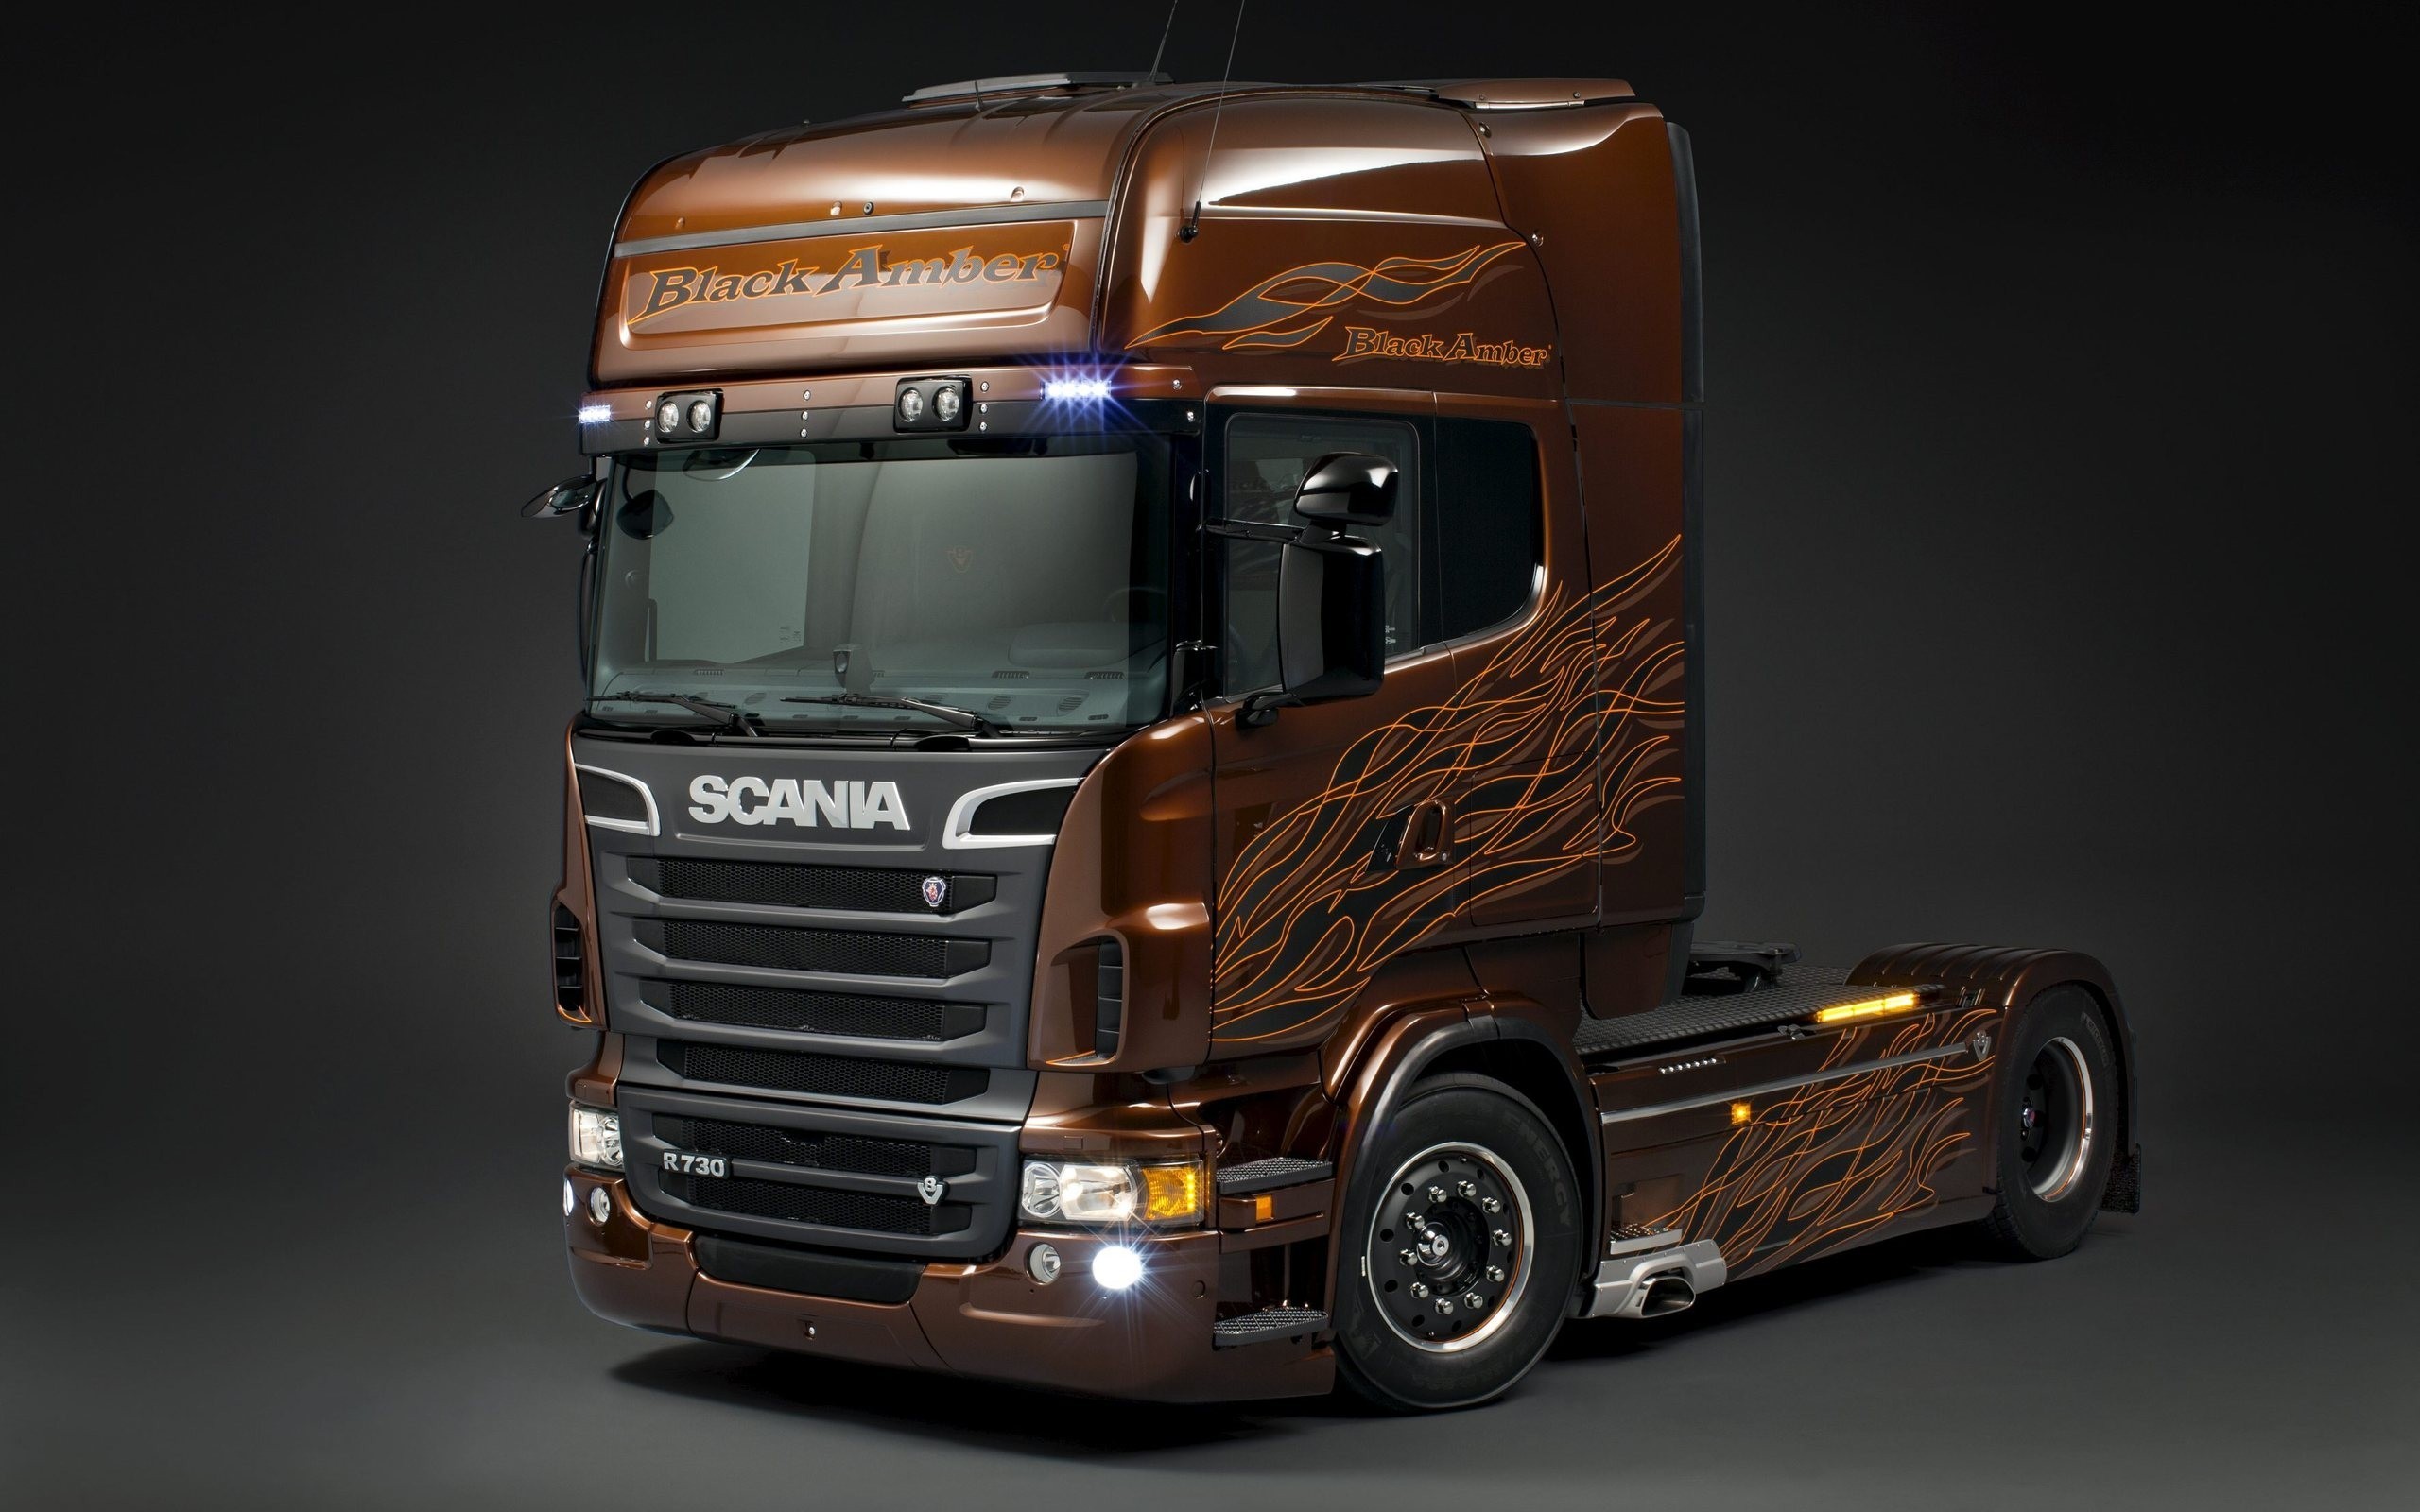 2560x1600 Scania trucks wallpaper